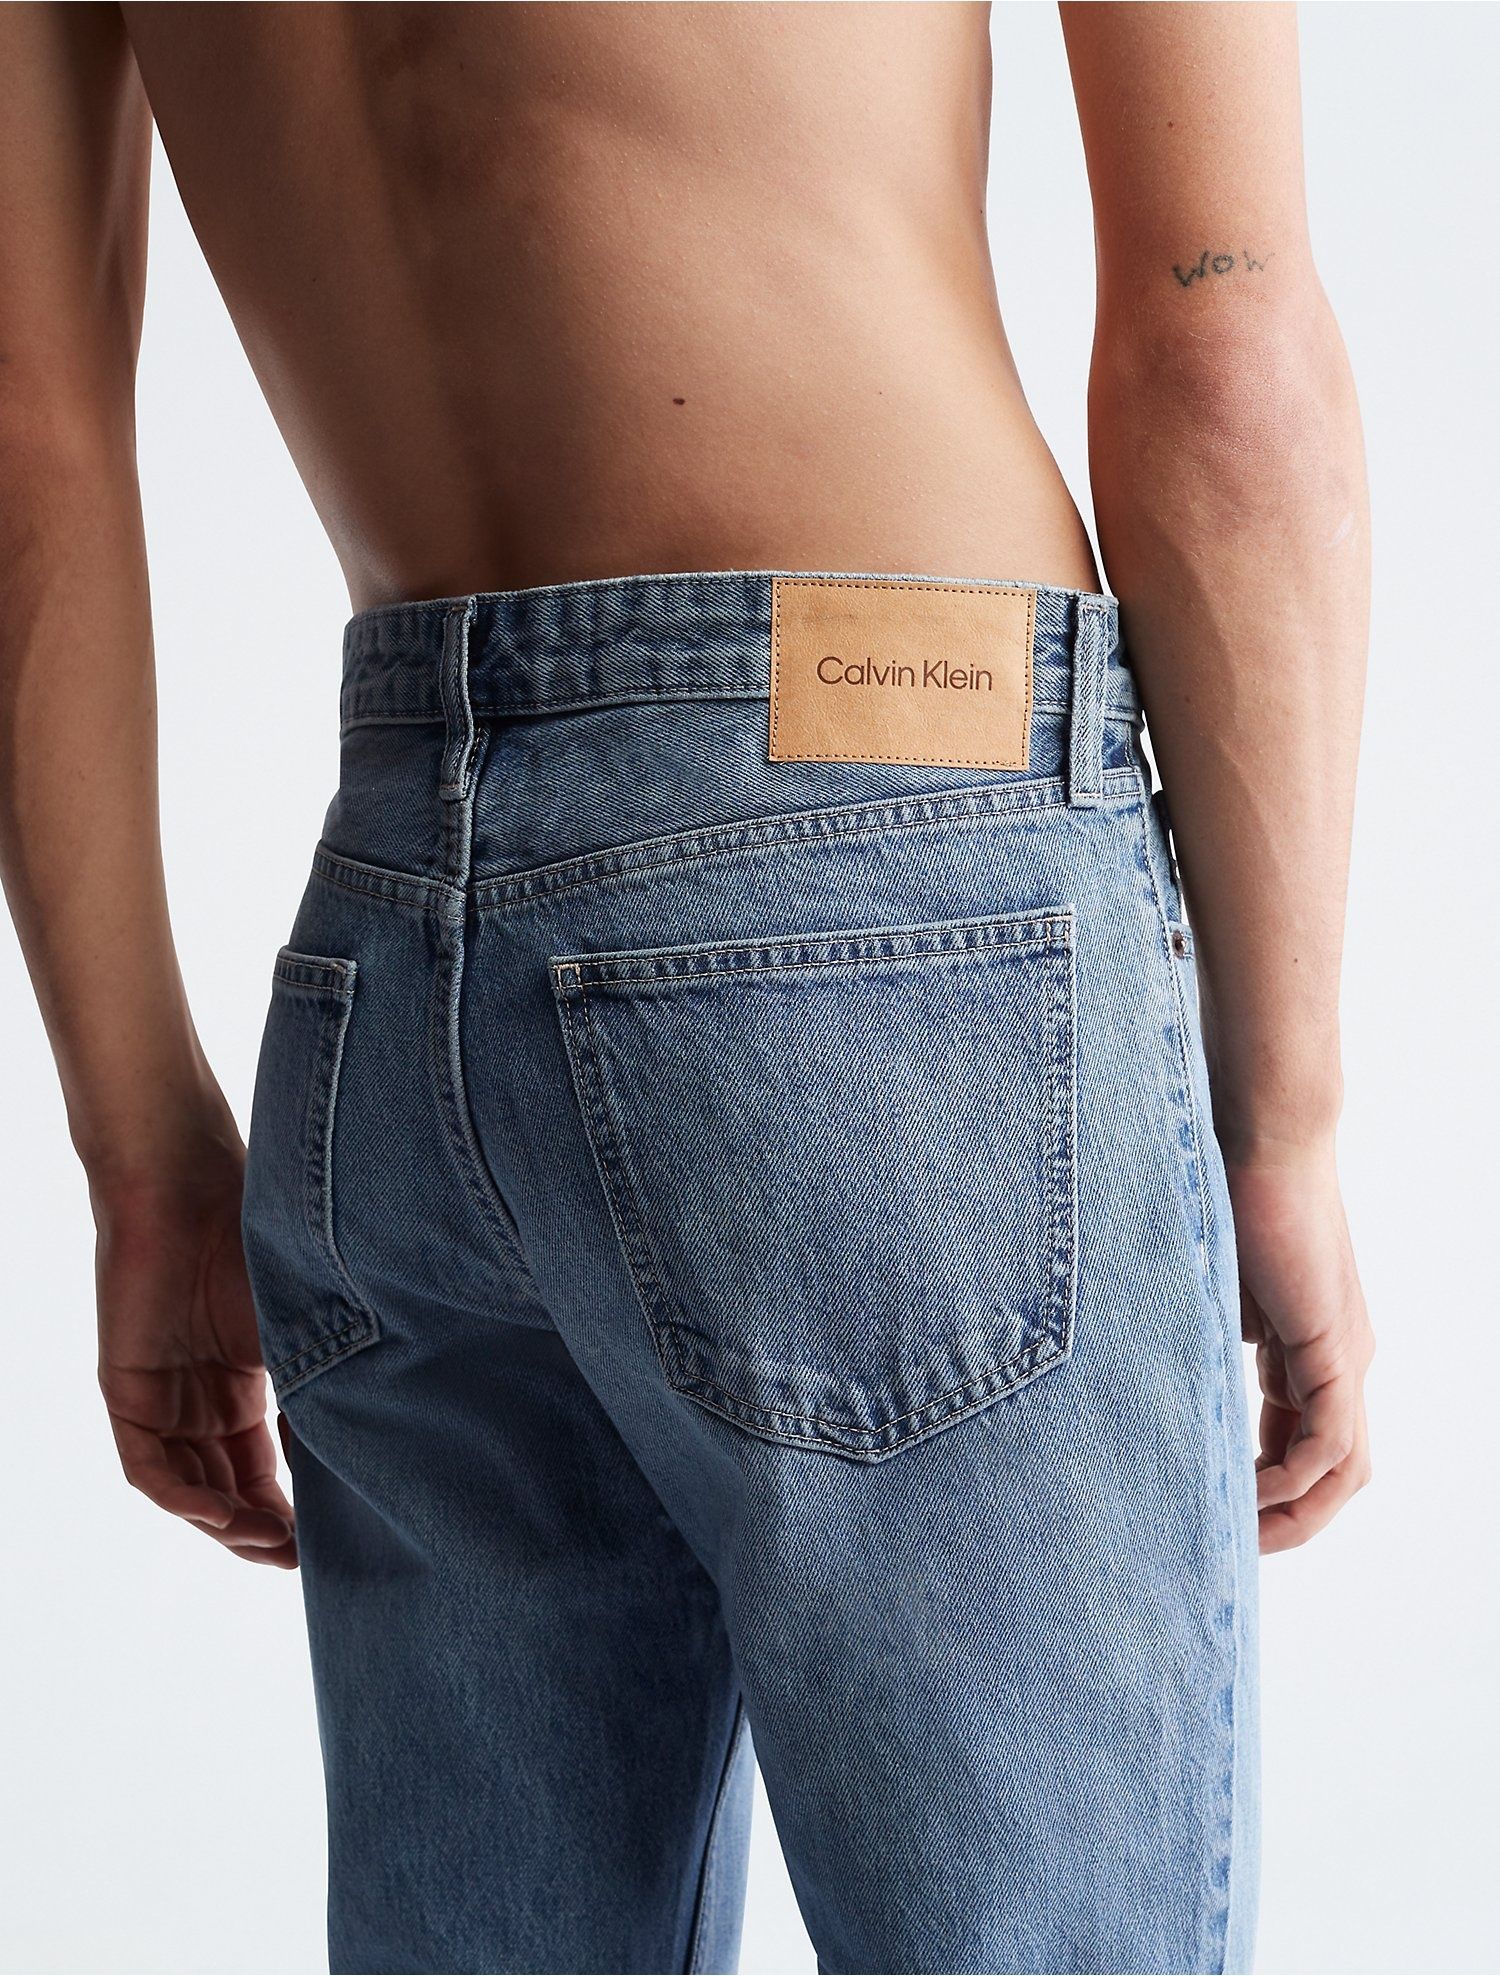 Мужские джинсы от бренда Calvin Klein